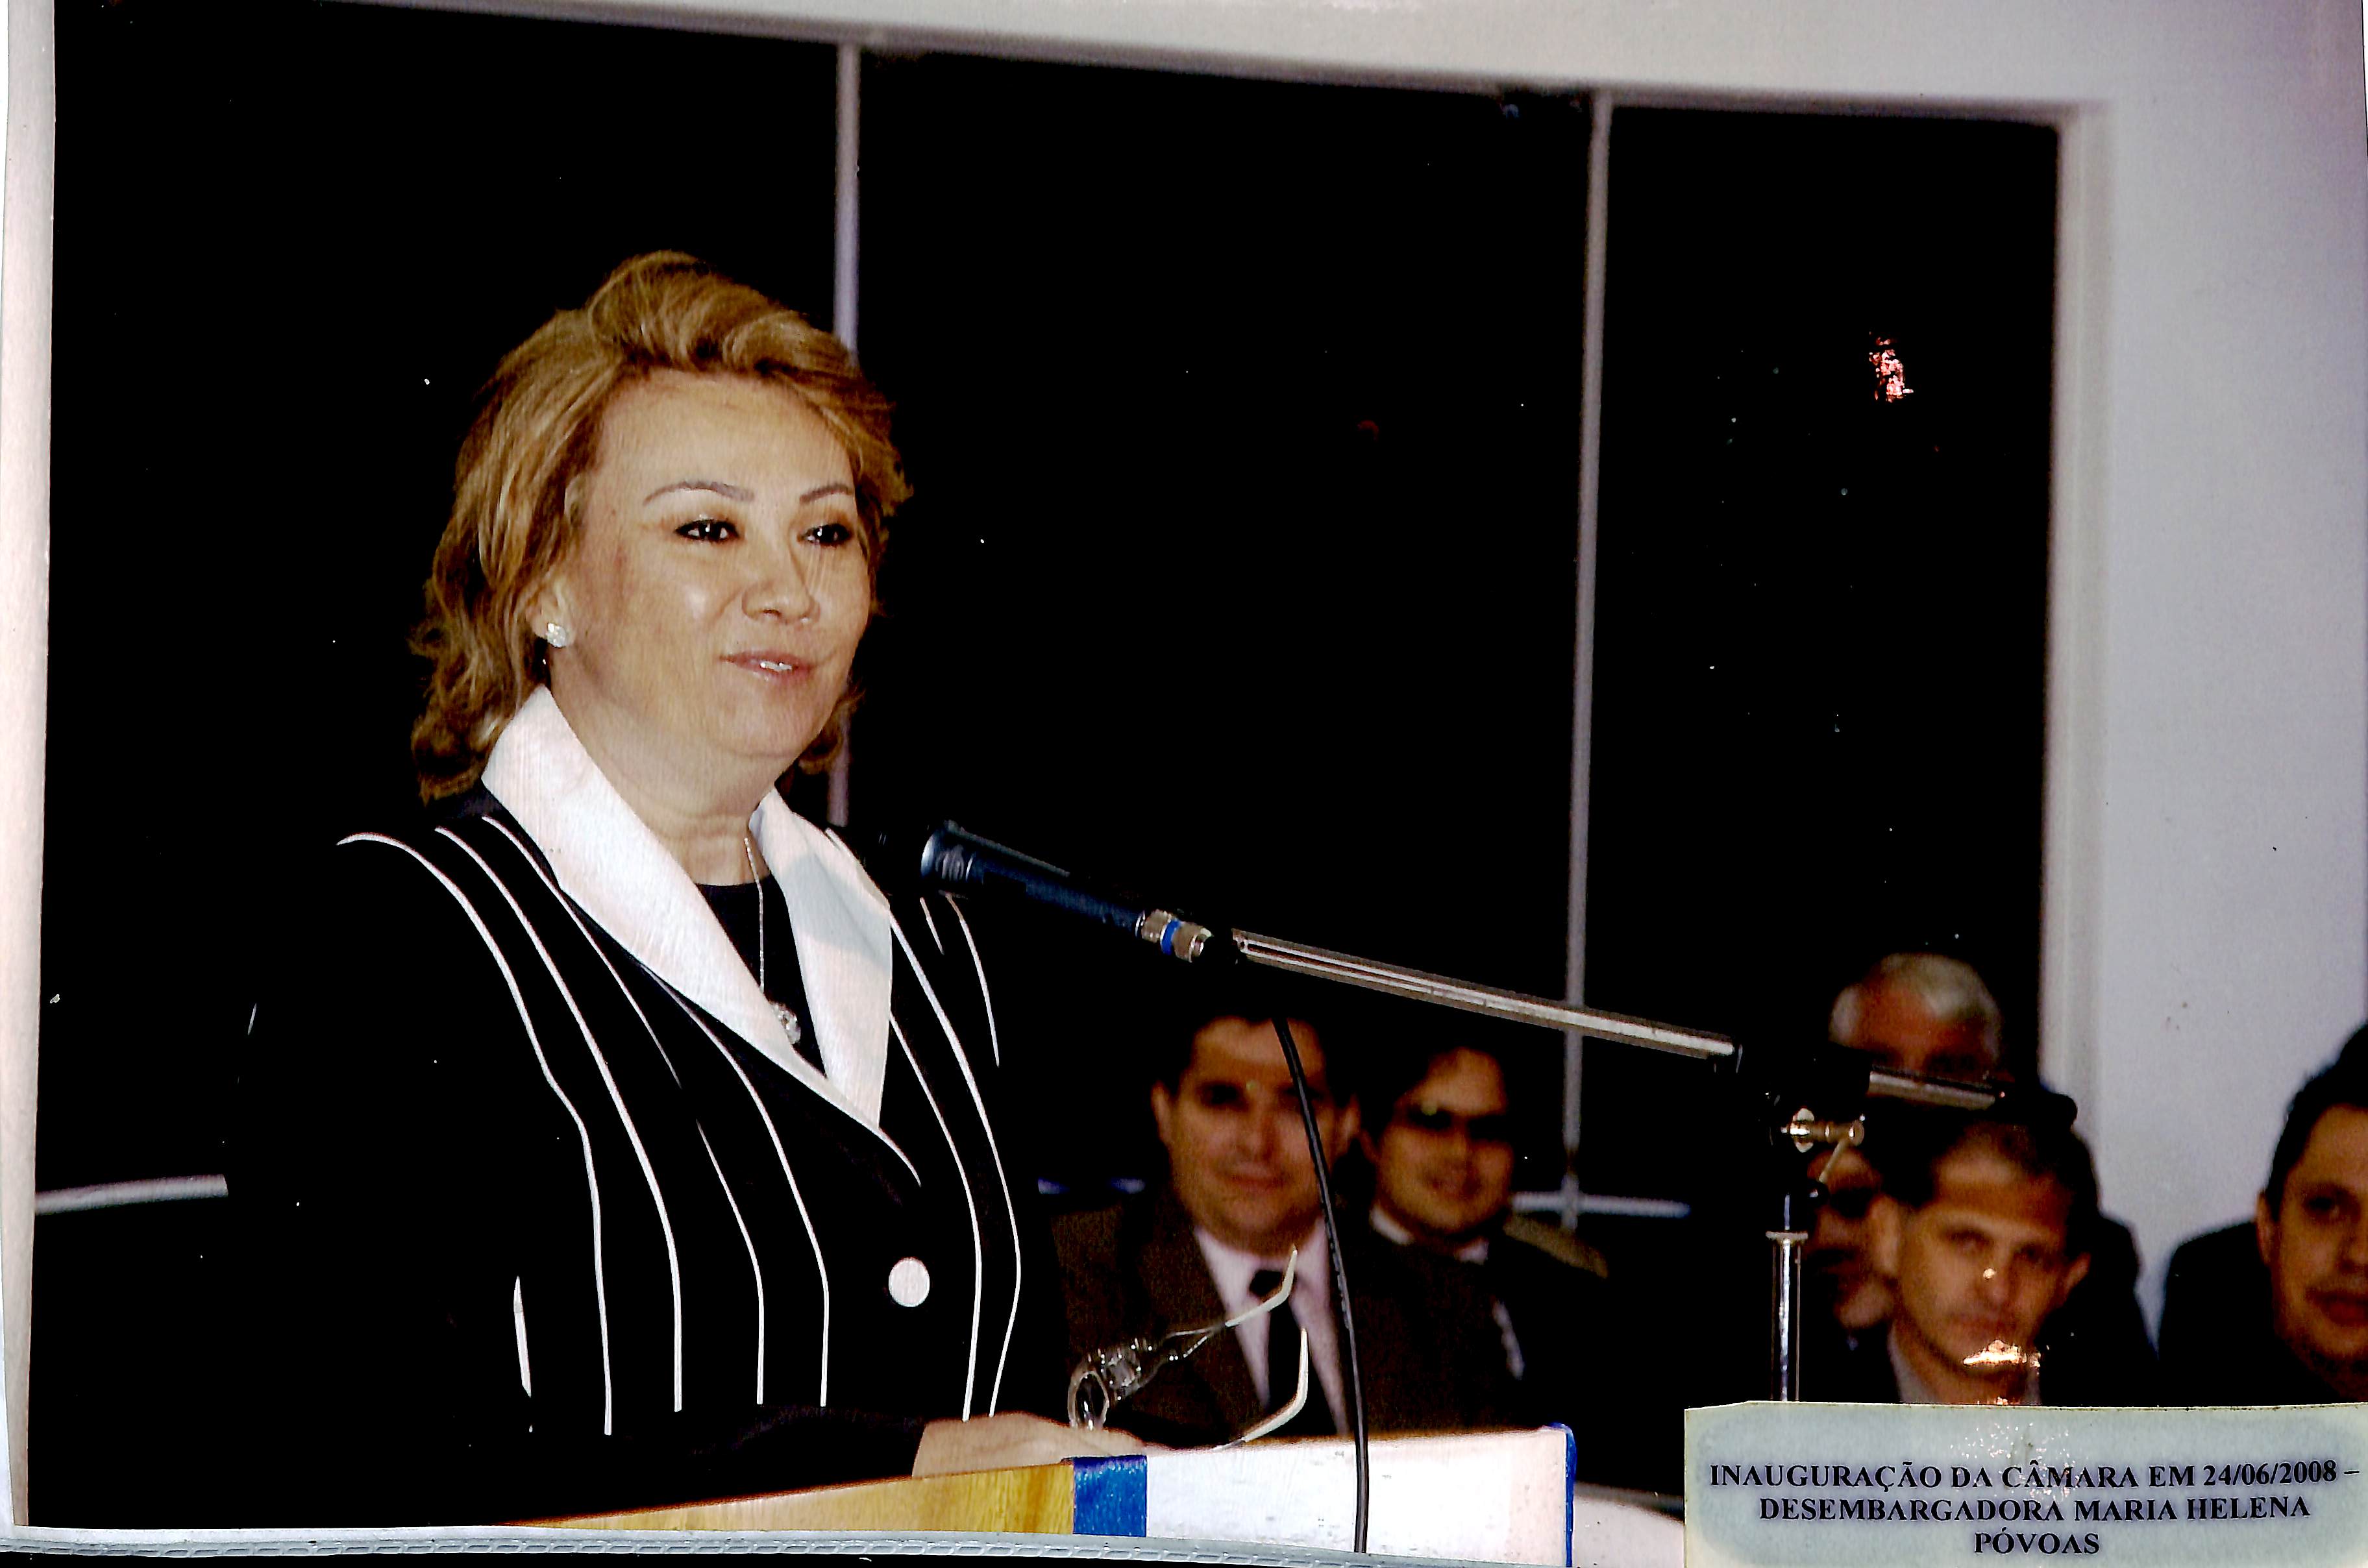 Inauguração da Câmara em 24/06/2008 - Desembargadora Maria Helena Póvoas